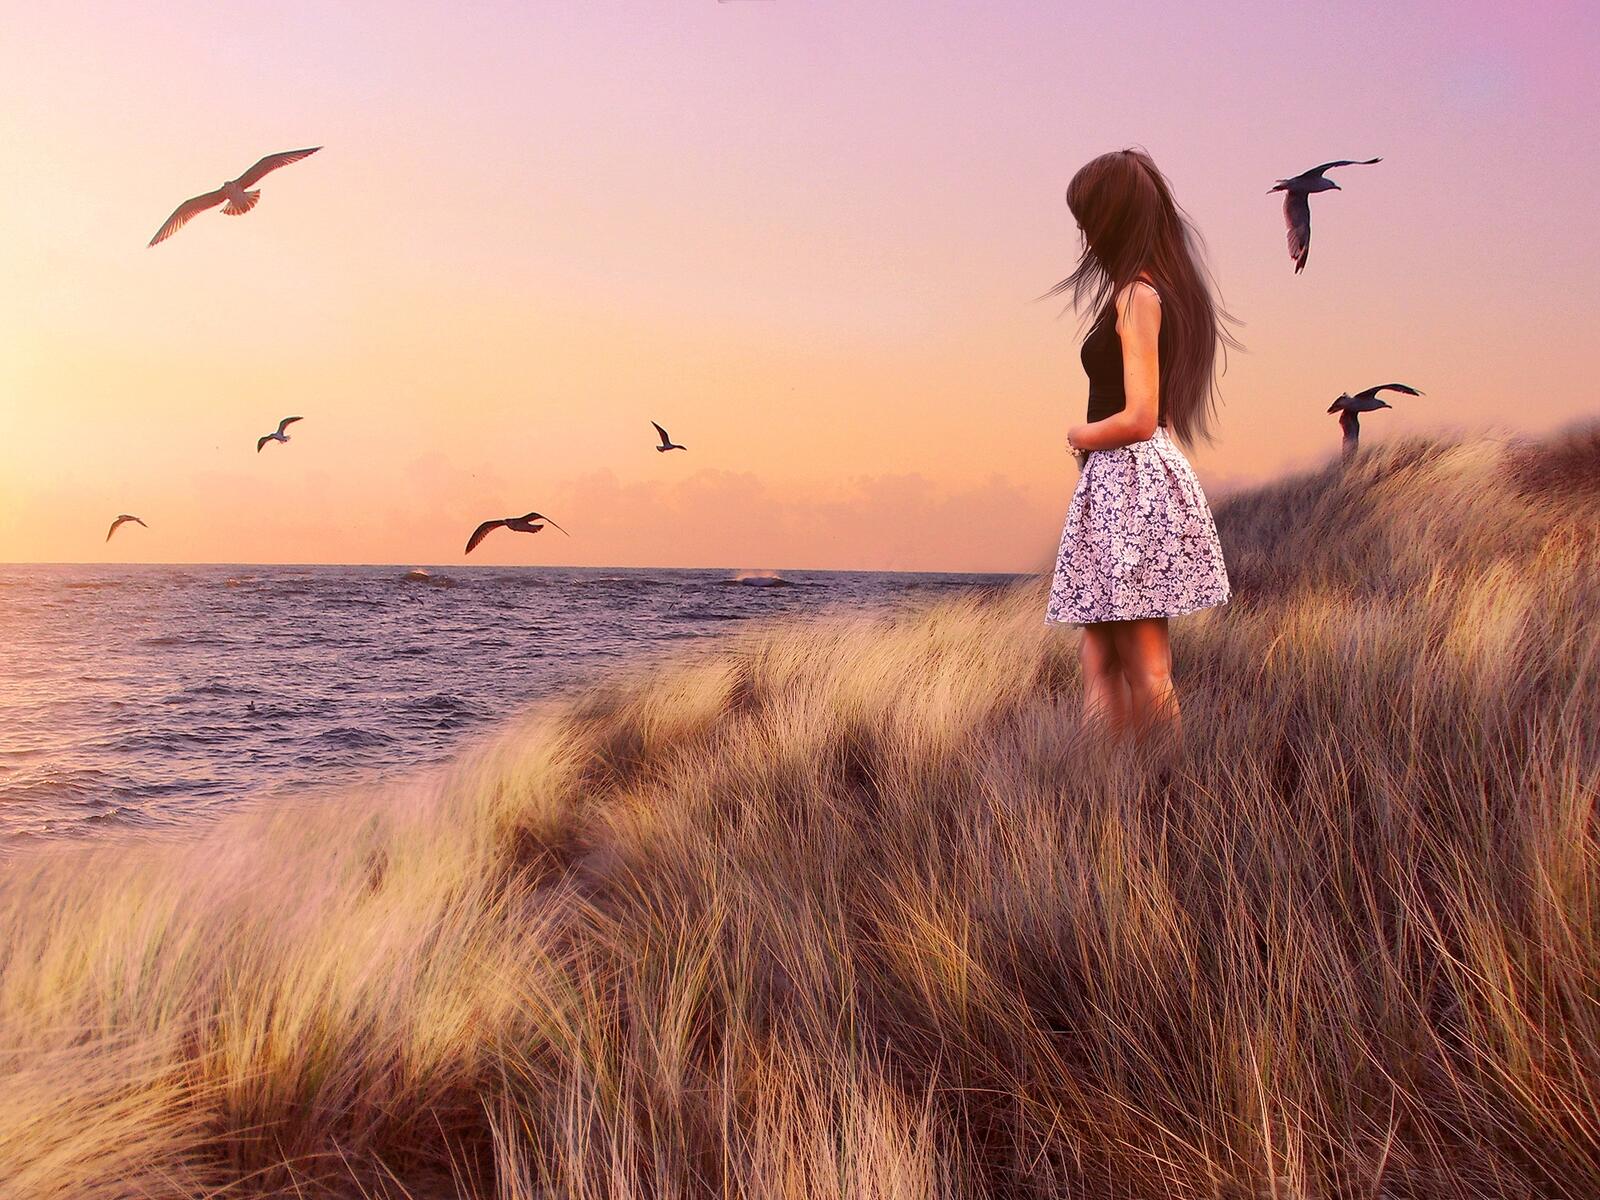 Бесплатное фото Девушка в платье стоит возле берега где летают чайки